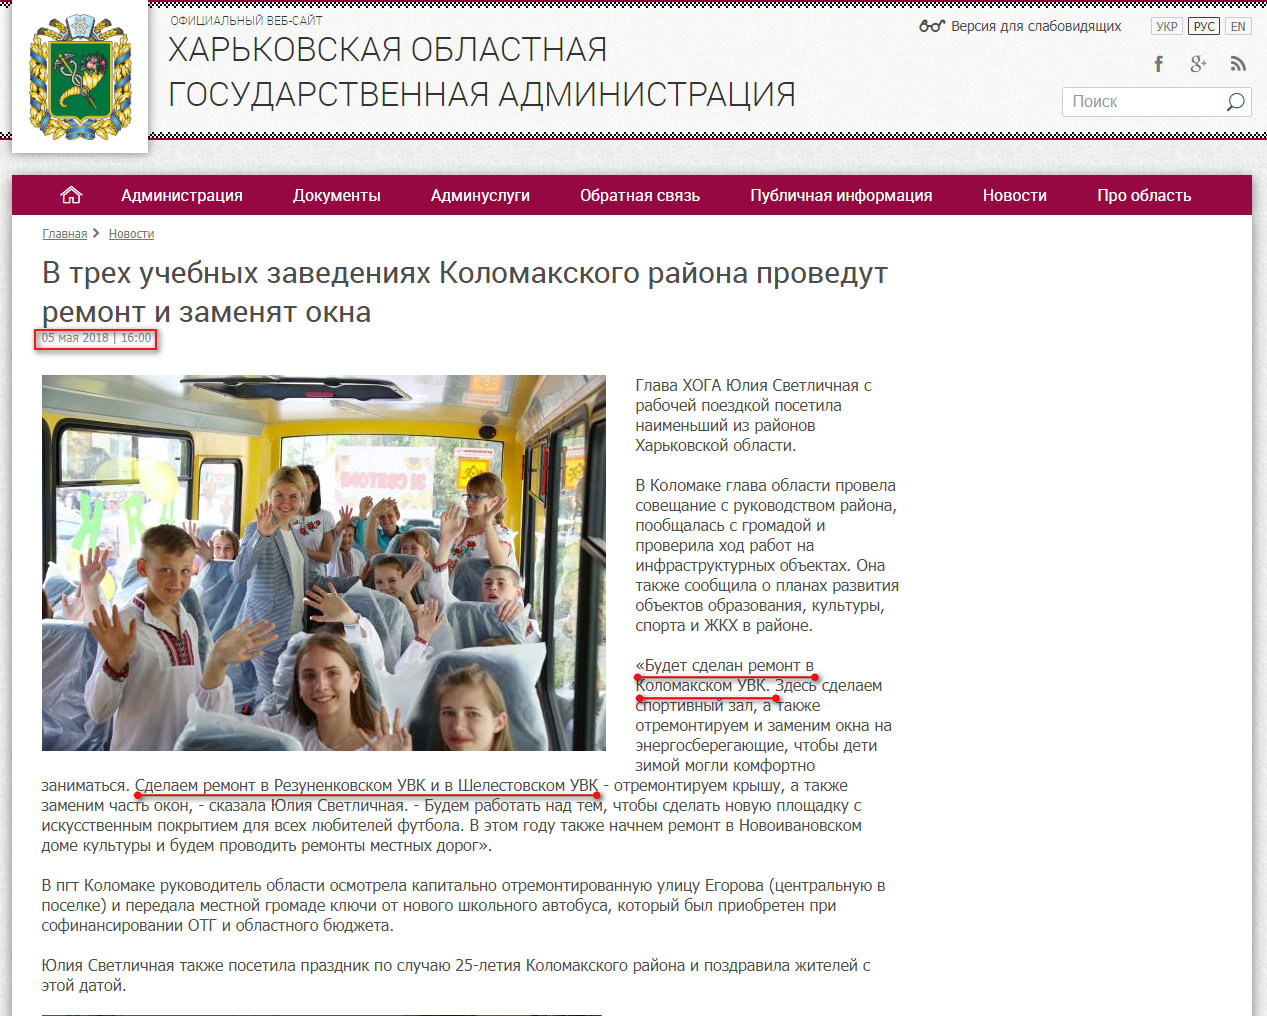 http://kharkivoda.gov.ua/ru/news/92688